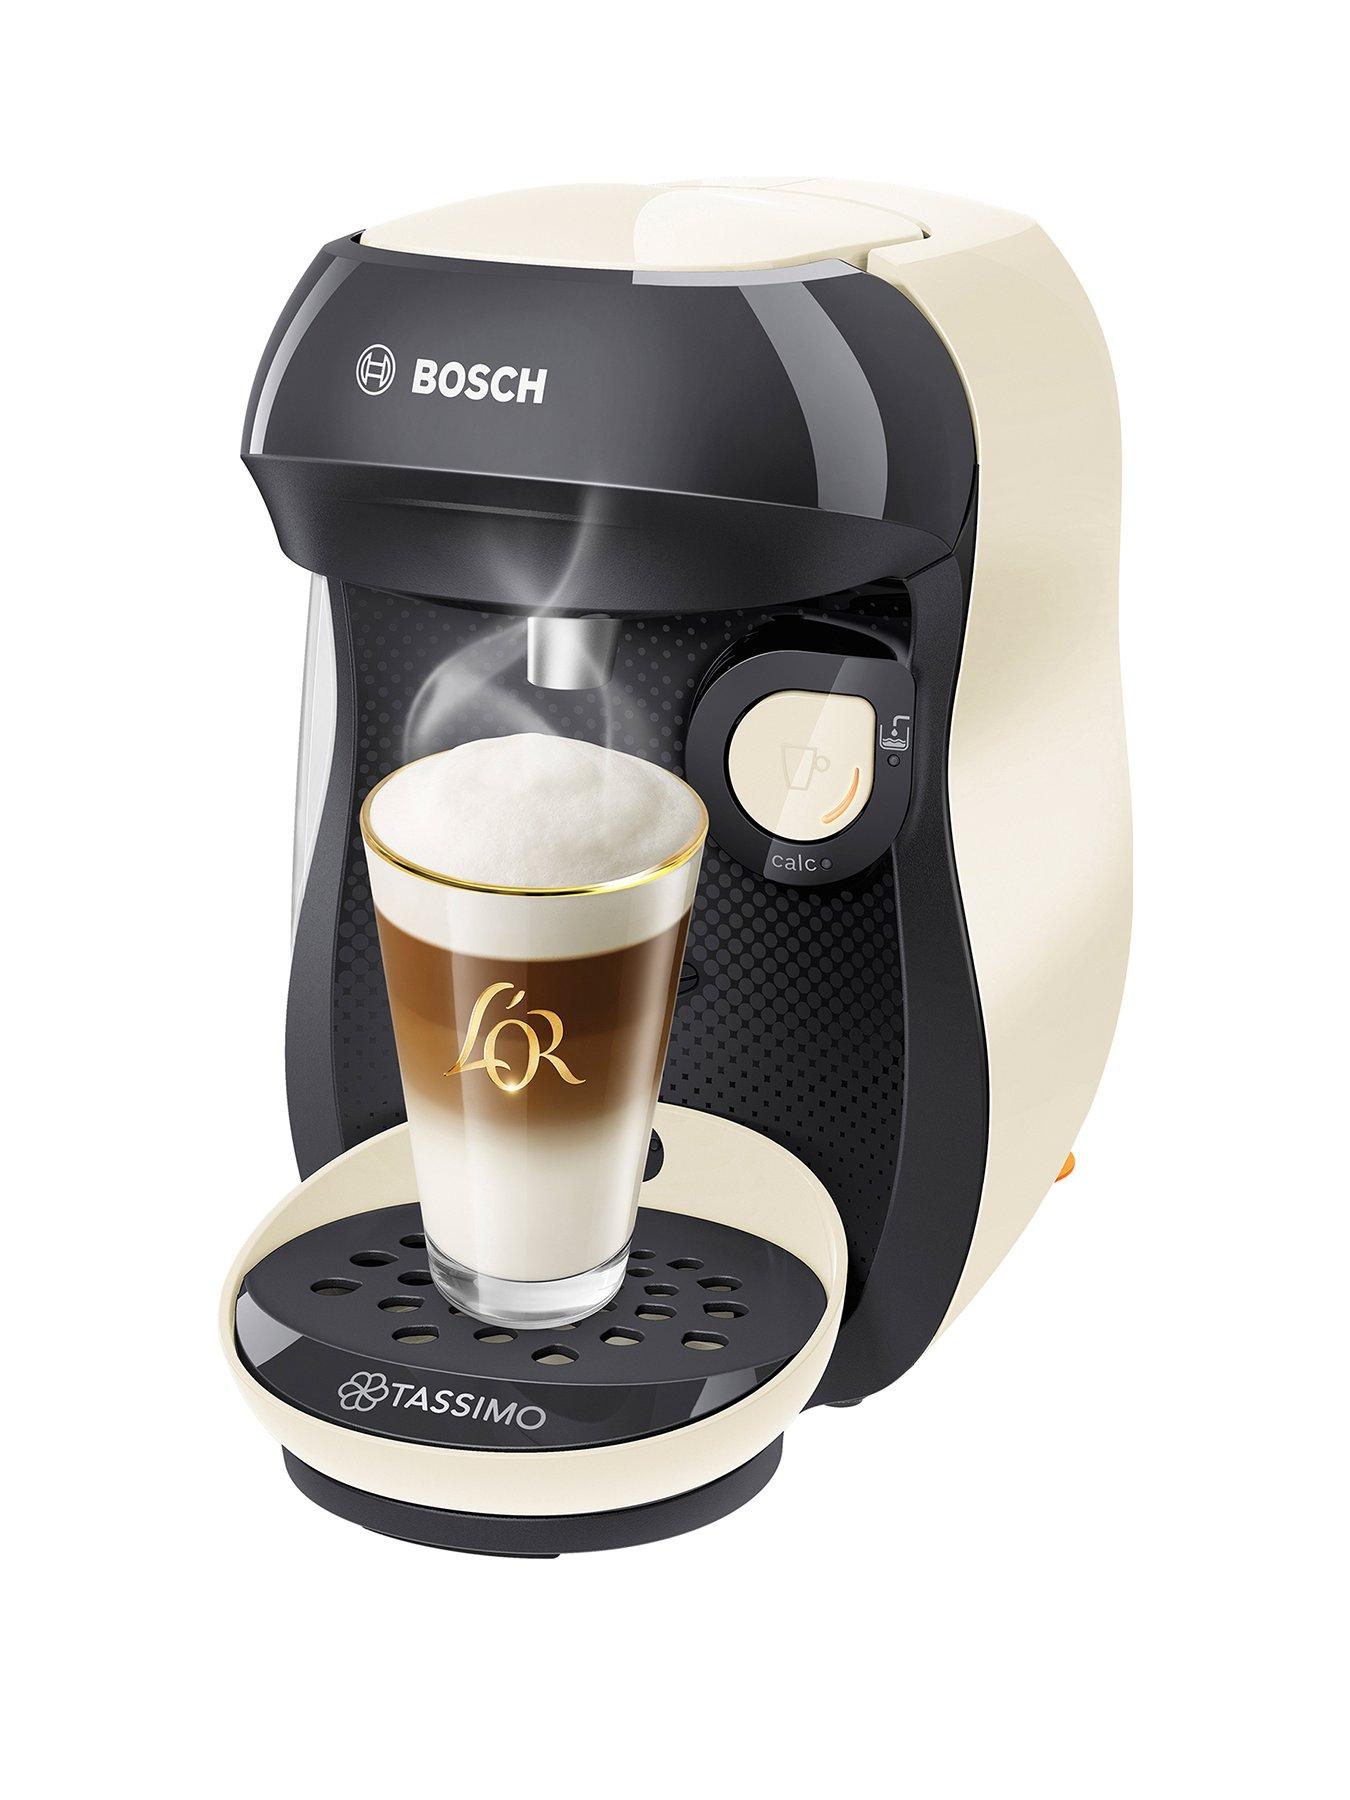 Tassimo Machine, Buy the Best Tassimo Coffee Machine